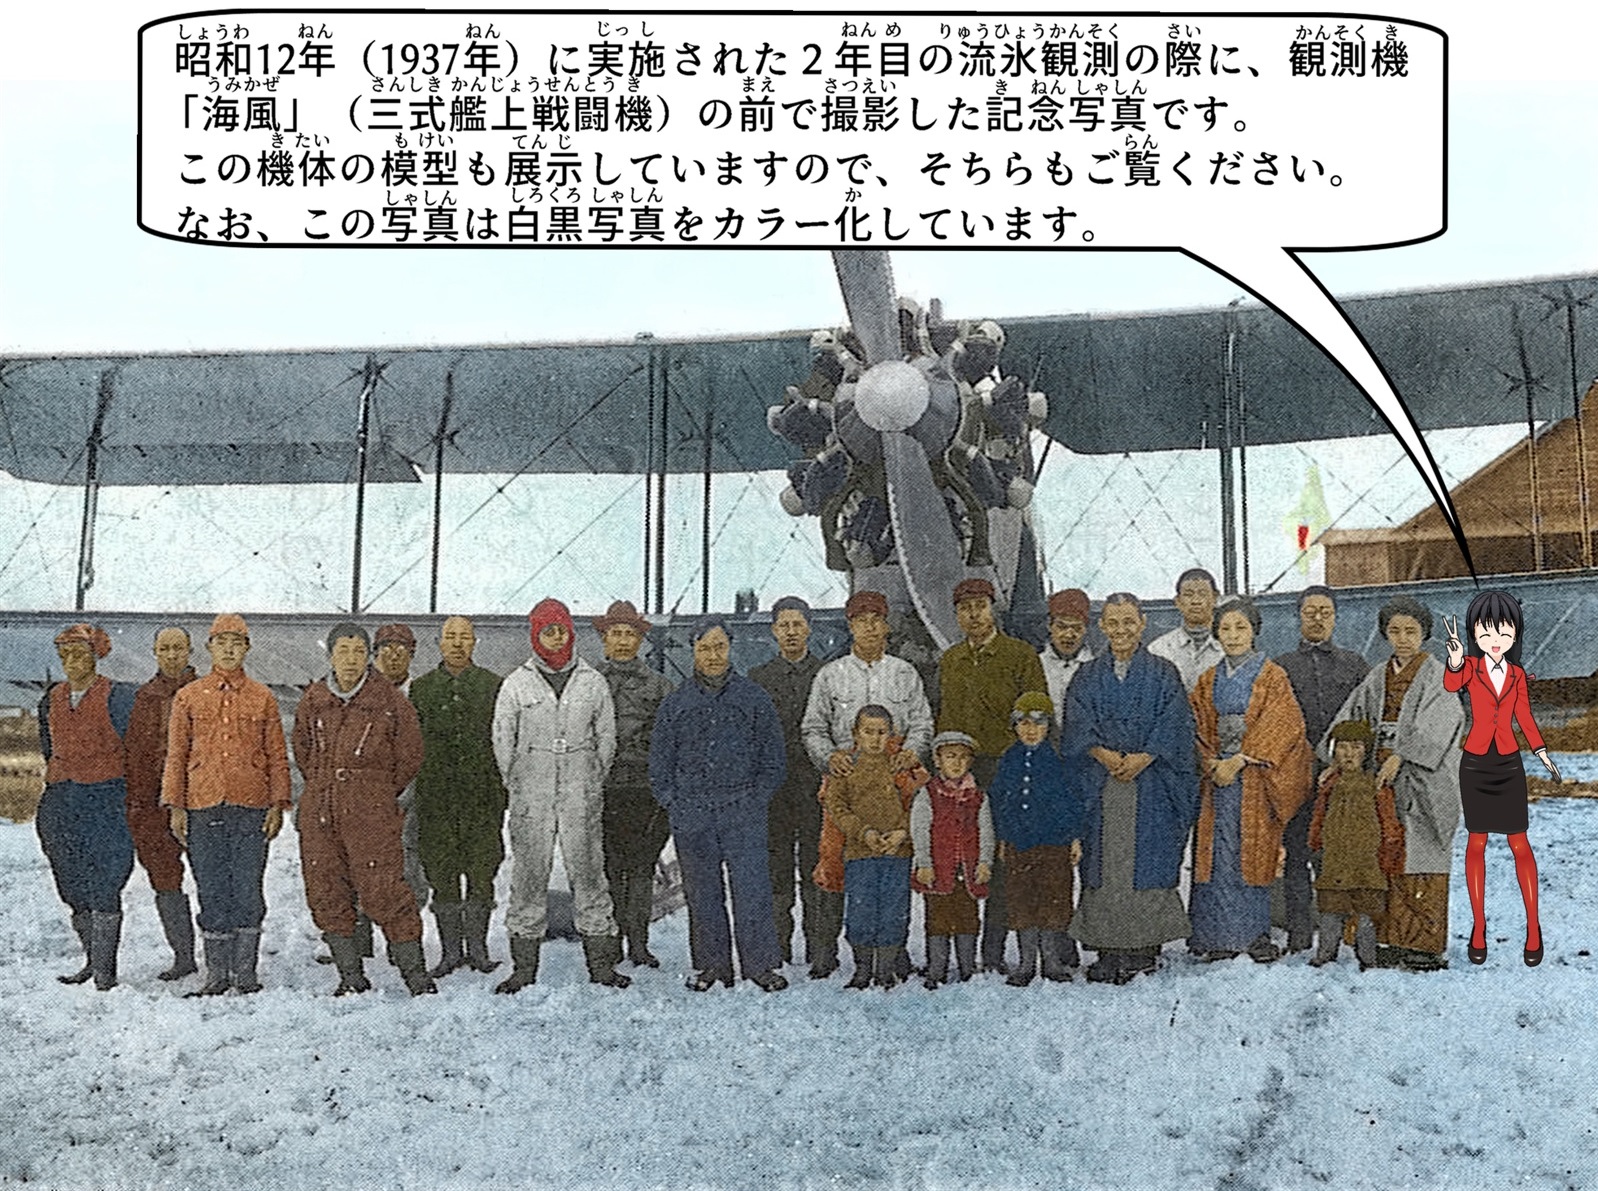 1937年に実施された2年目の流氷観測の際に観測機「海風」の前で撮影した記念写真の説明をしているイラスト